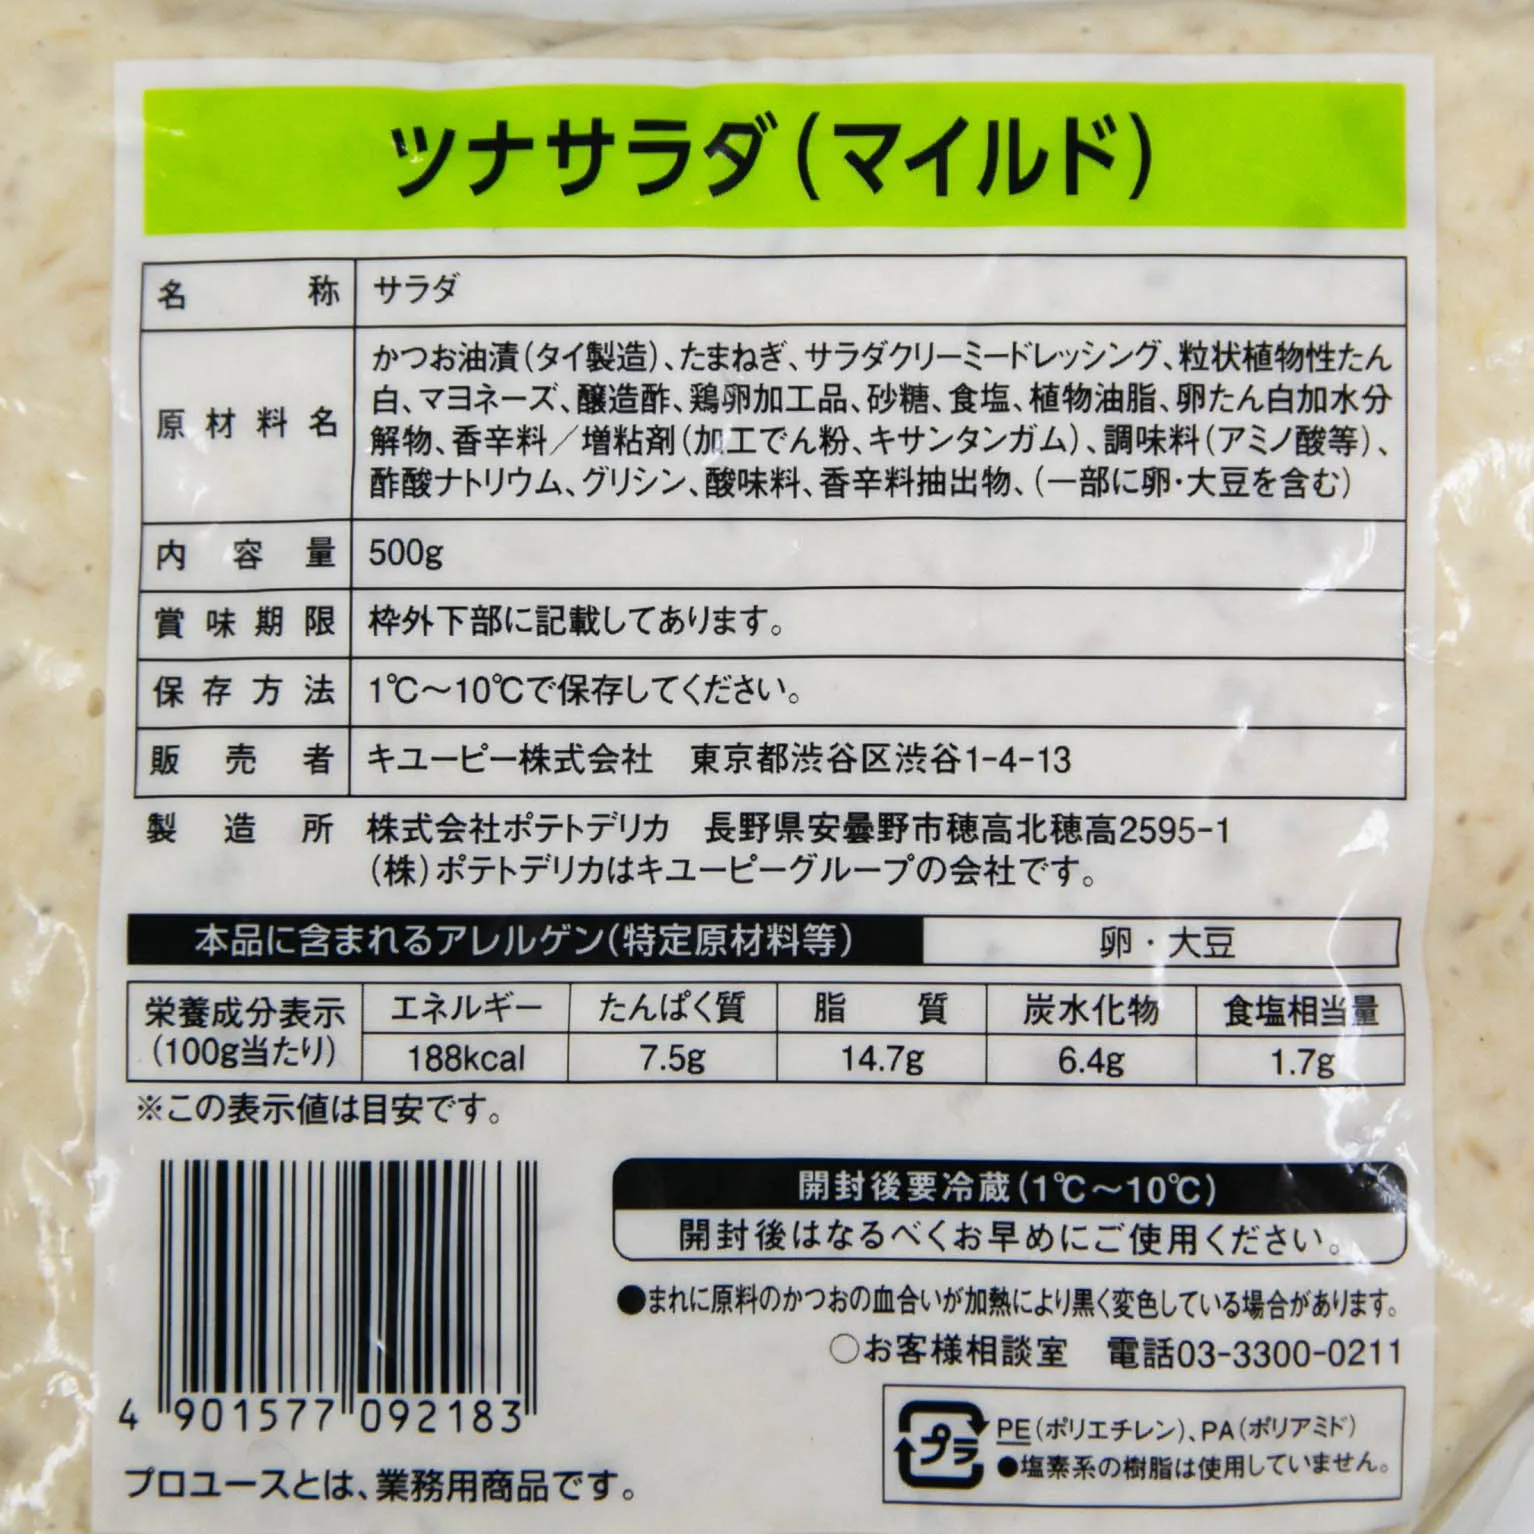 キユーピーのサラダ ツナサラダ (マイルド) 500